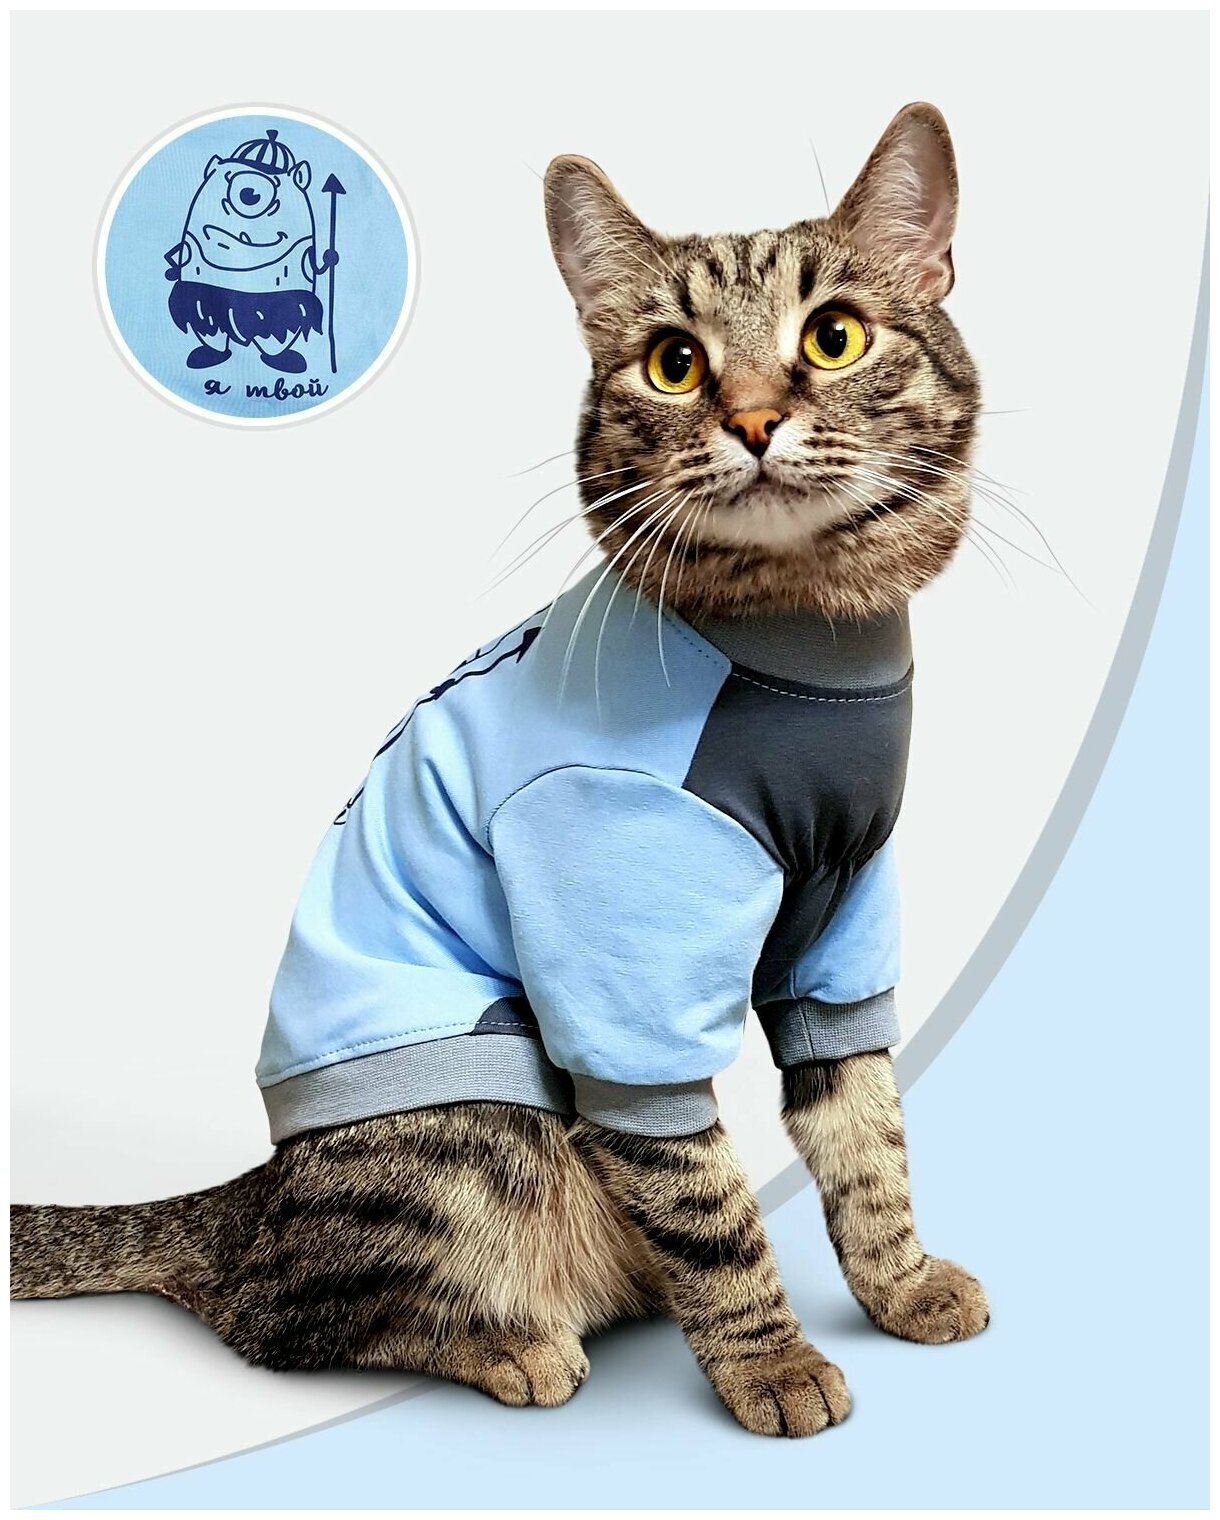 Футболка одежда для кошек "Я твой" размер XXS/ Майка для для котят/котов /сфинкс / сфинксов / Одежда собак мелких пород - фотография № 1